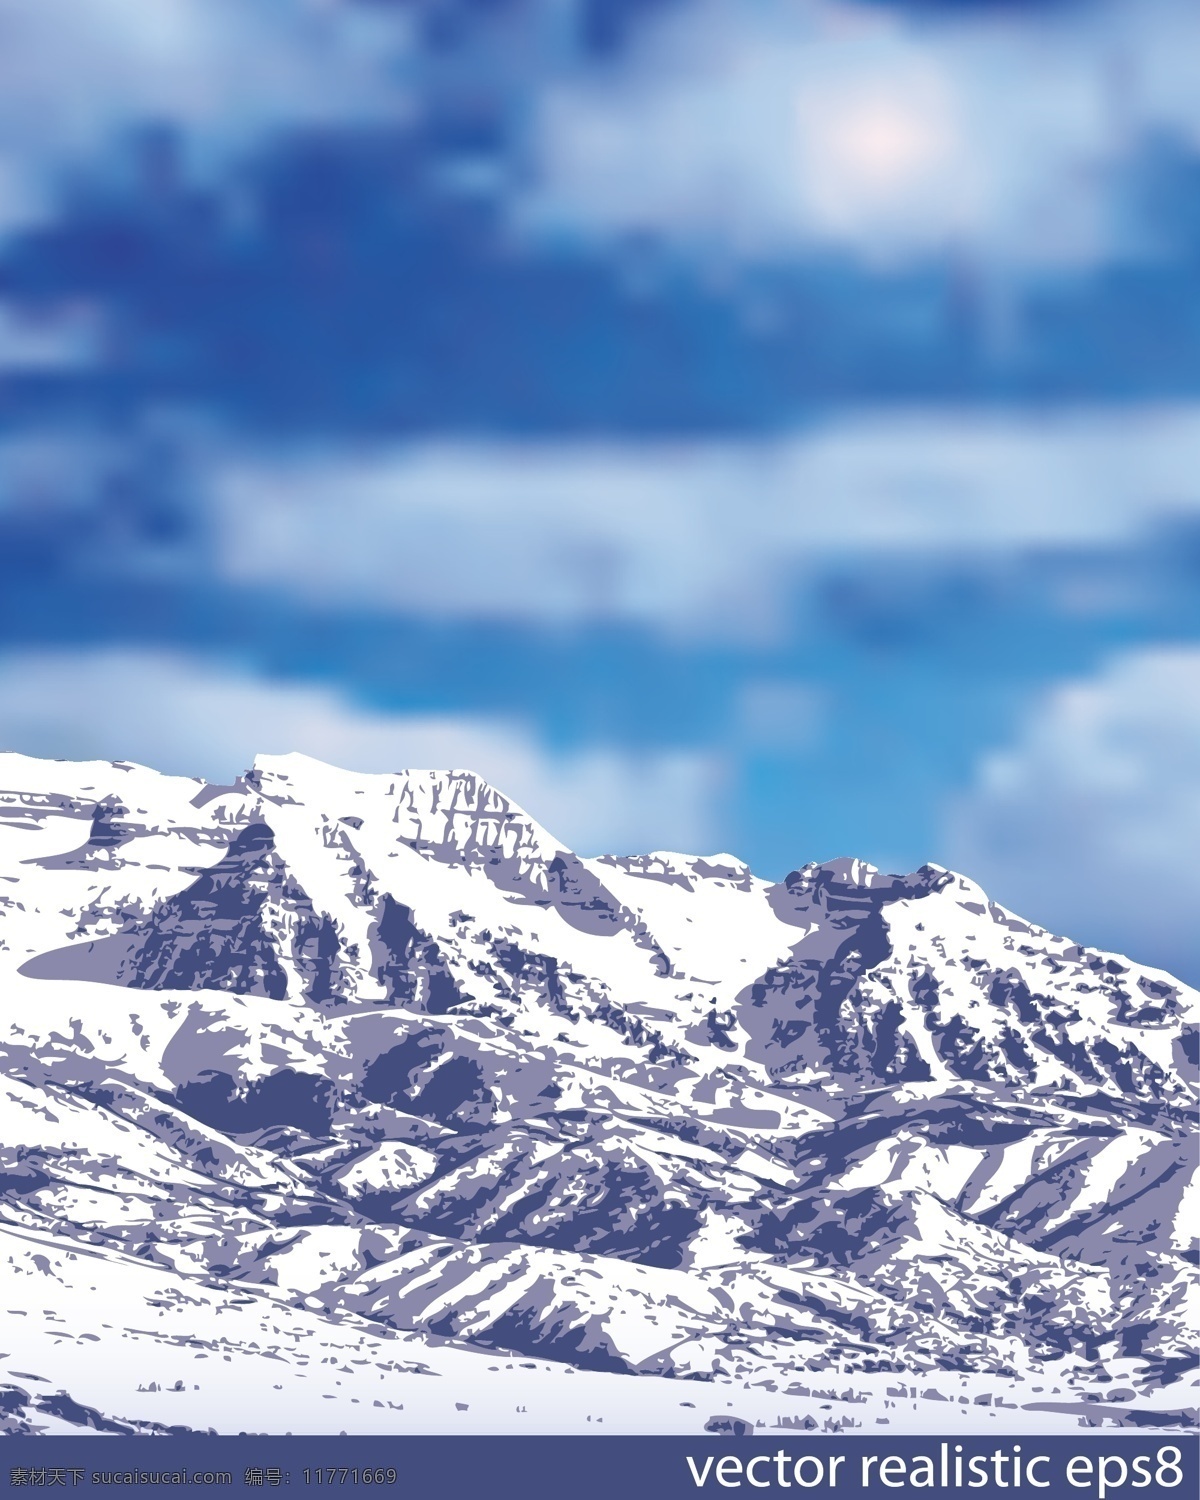 雪山 喜马拉雅山脉 卡通 设计素材 背 卡通设计 背景 海报 天空 蓝天 山峰 山丘 群山 远山 卡通背景 唯美 浪漫 大气 澎湃 分层 背景素材